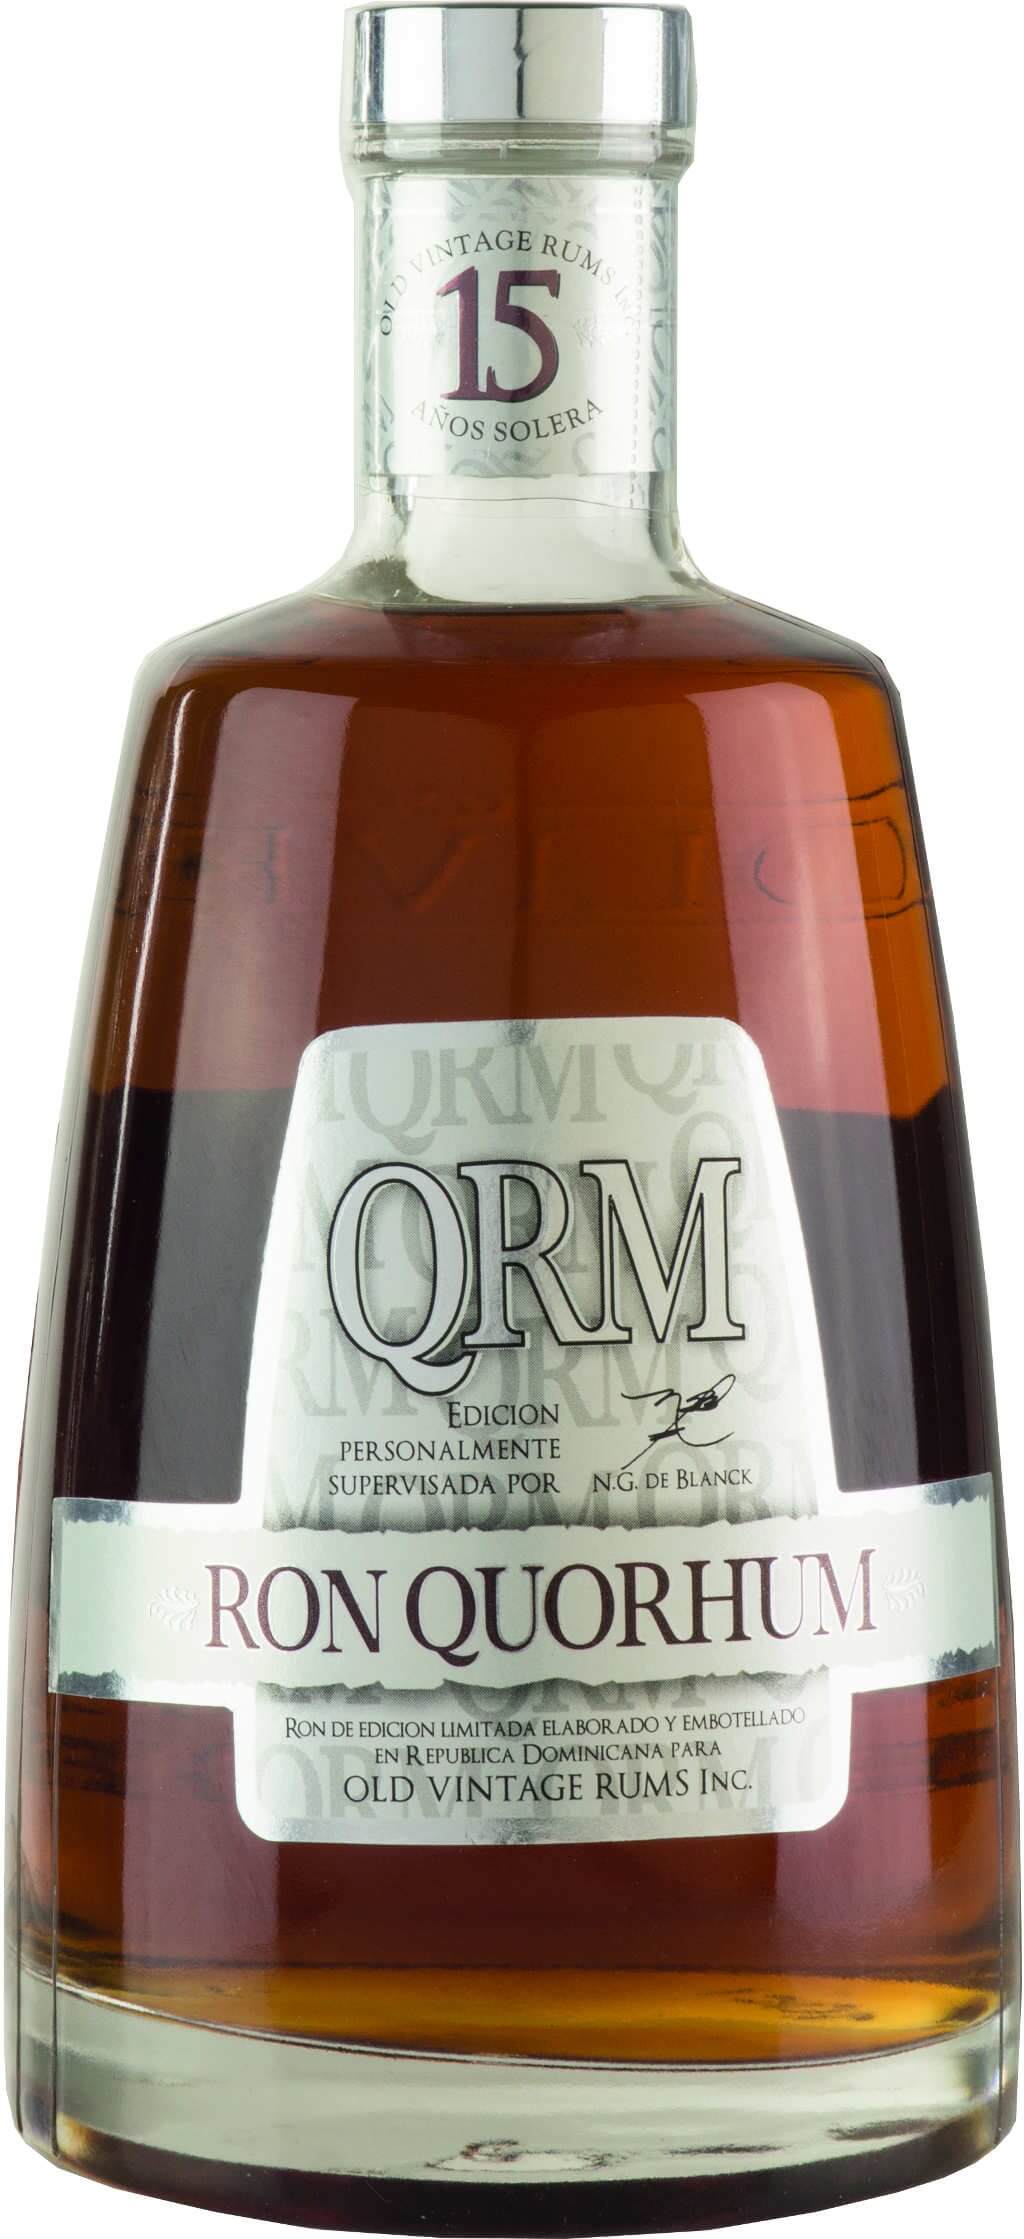  Quorhum QRM 15 Anos Solera Rum 40% vol. 0,70l